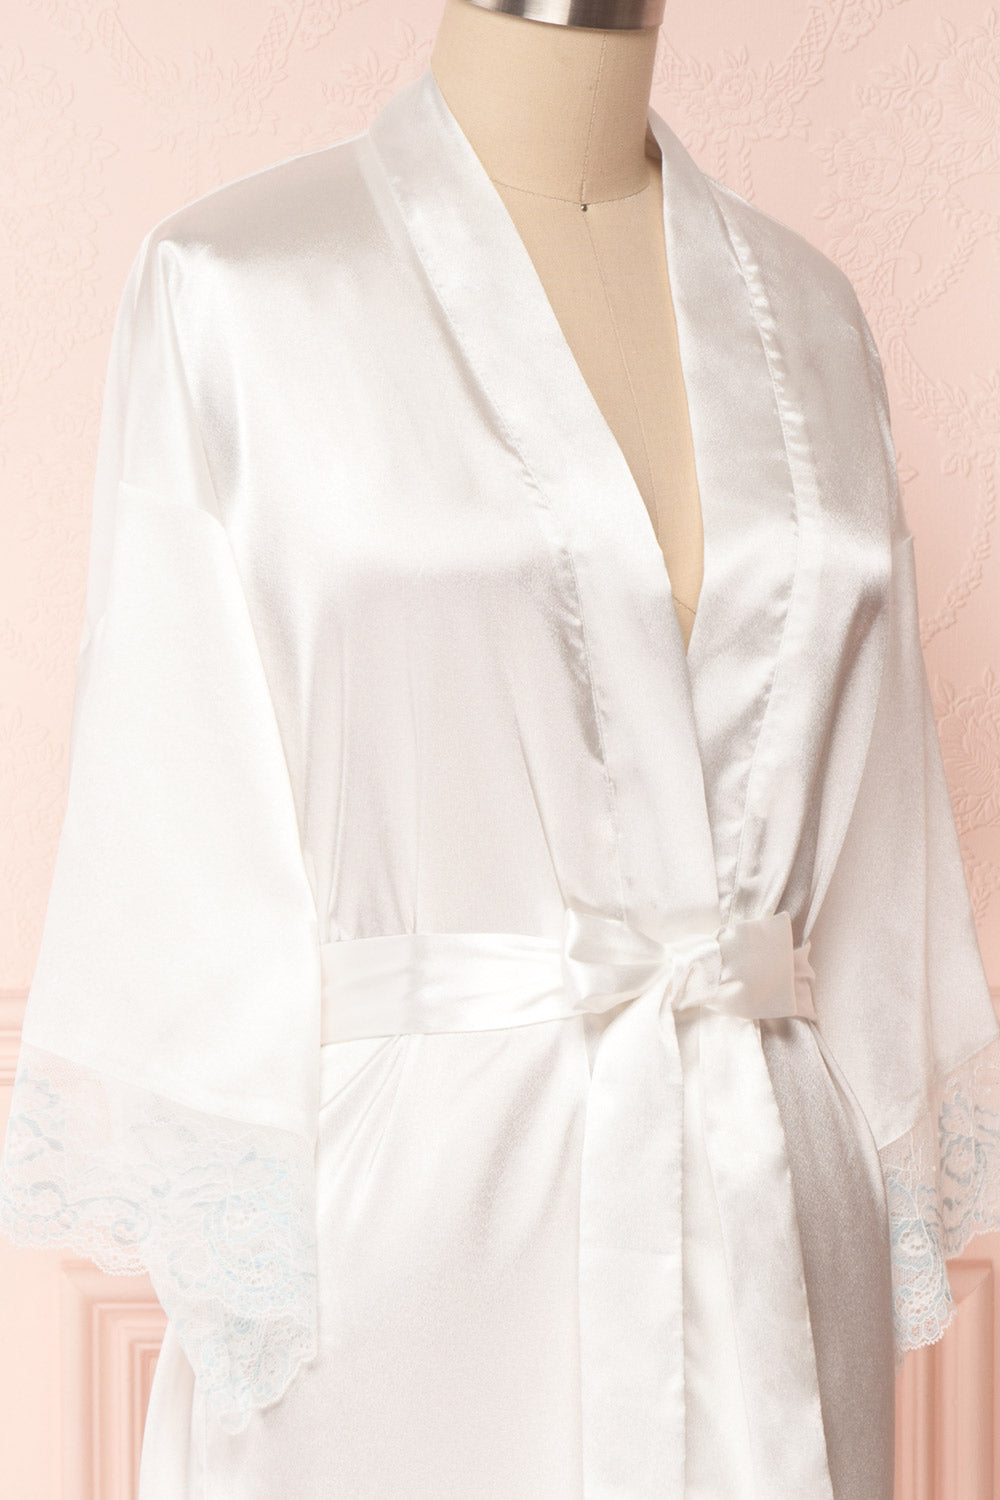 Dorika White Satin Bridal Kimono | Boudoir 1861 5